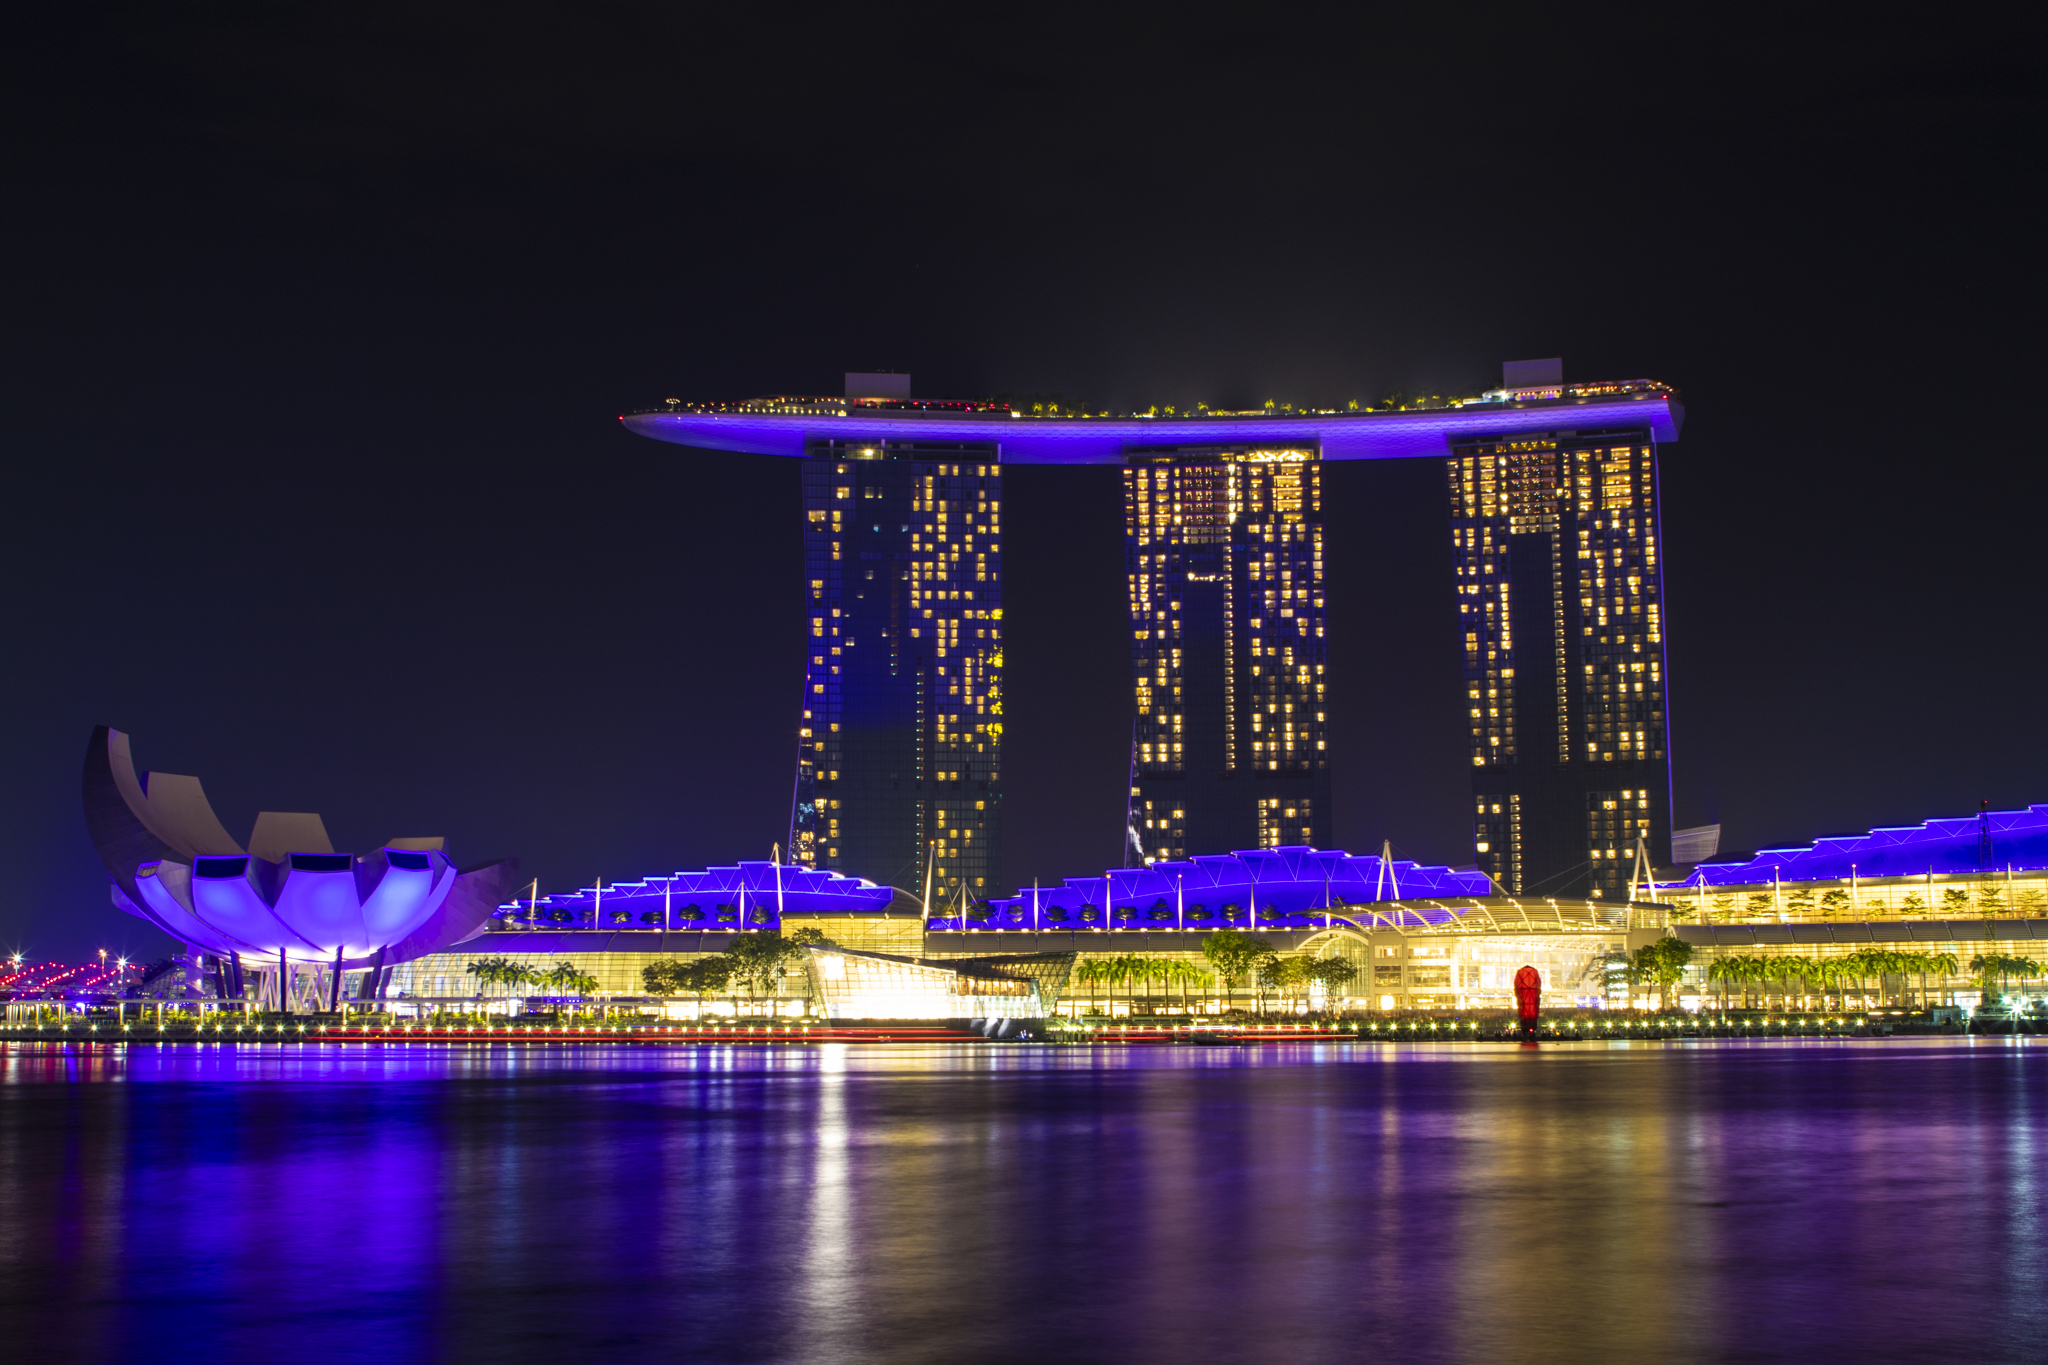 Marina Bay sands by night-Marina Bay-Singapore